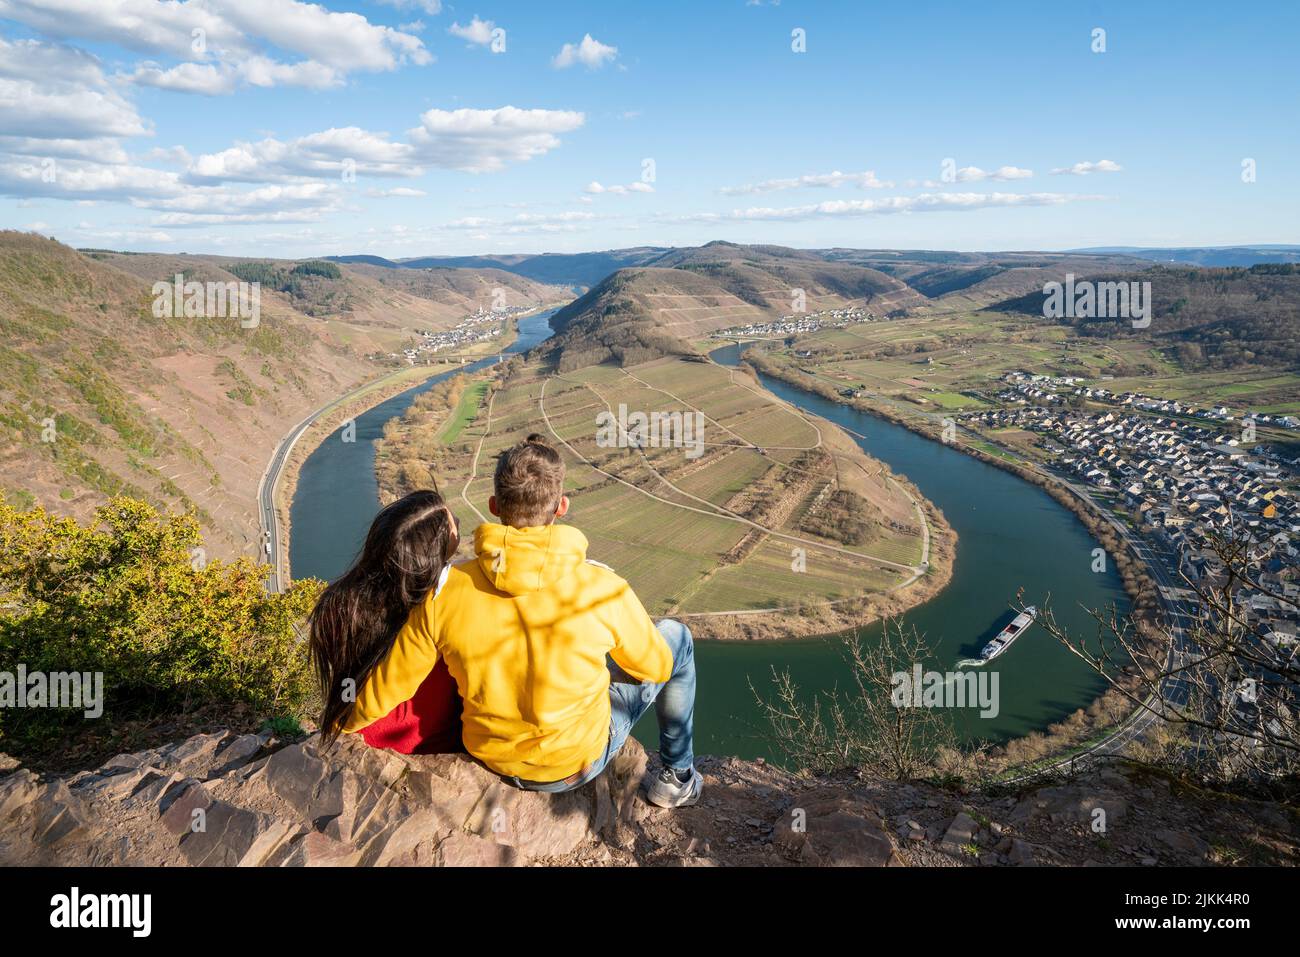 Un'immagine ad angolo alto di una giovane coppia seduta sul bordo della gola godendo dell'affascinante vista del lago e delle montagne Foto Stock